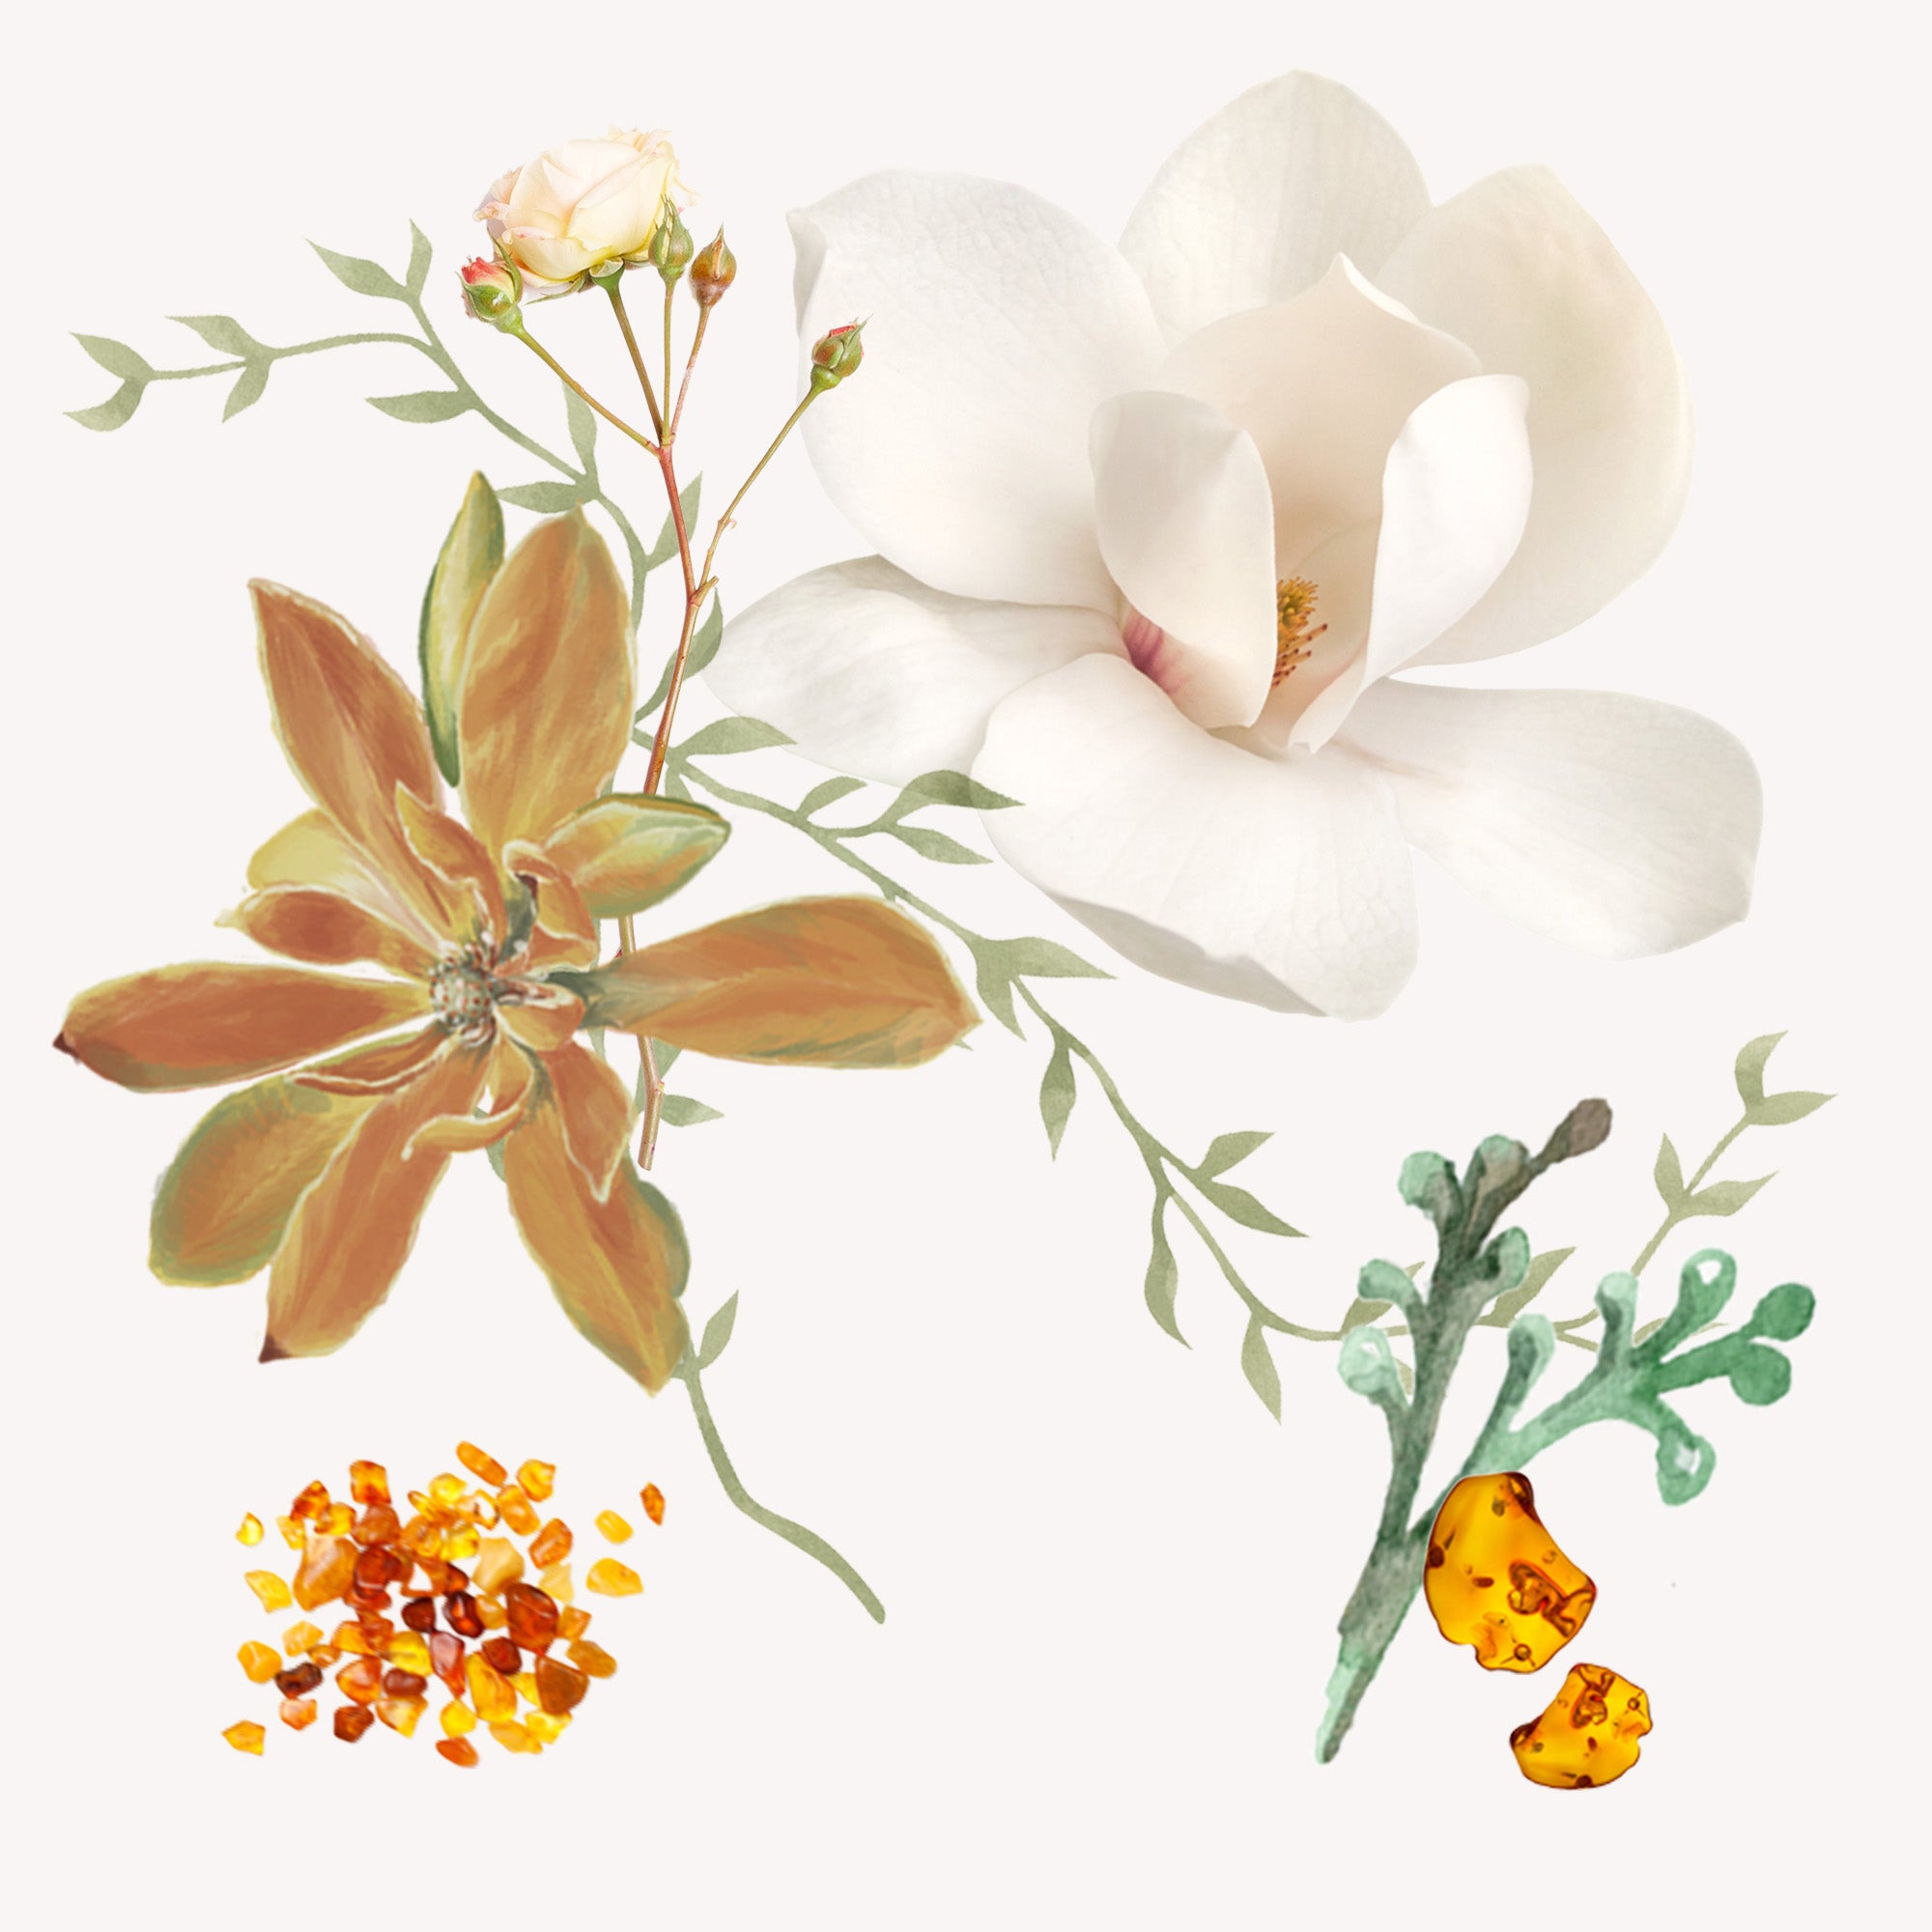 Boles d'olor Salt Flower (Flor de Sal) Brumas de Ambiente Essence (50ml), Air Revitaliser Essence